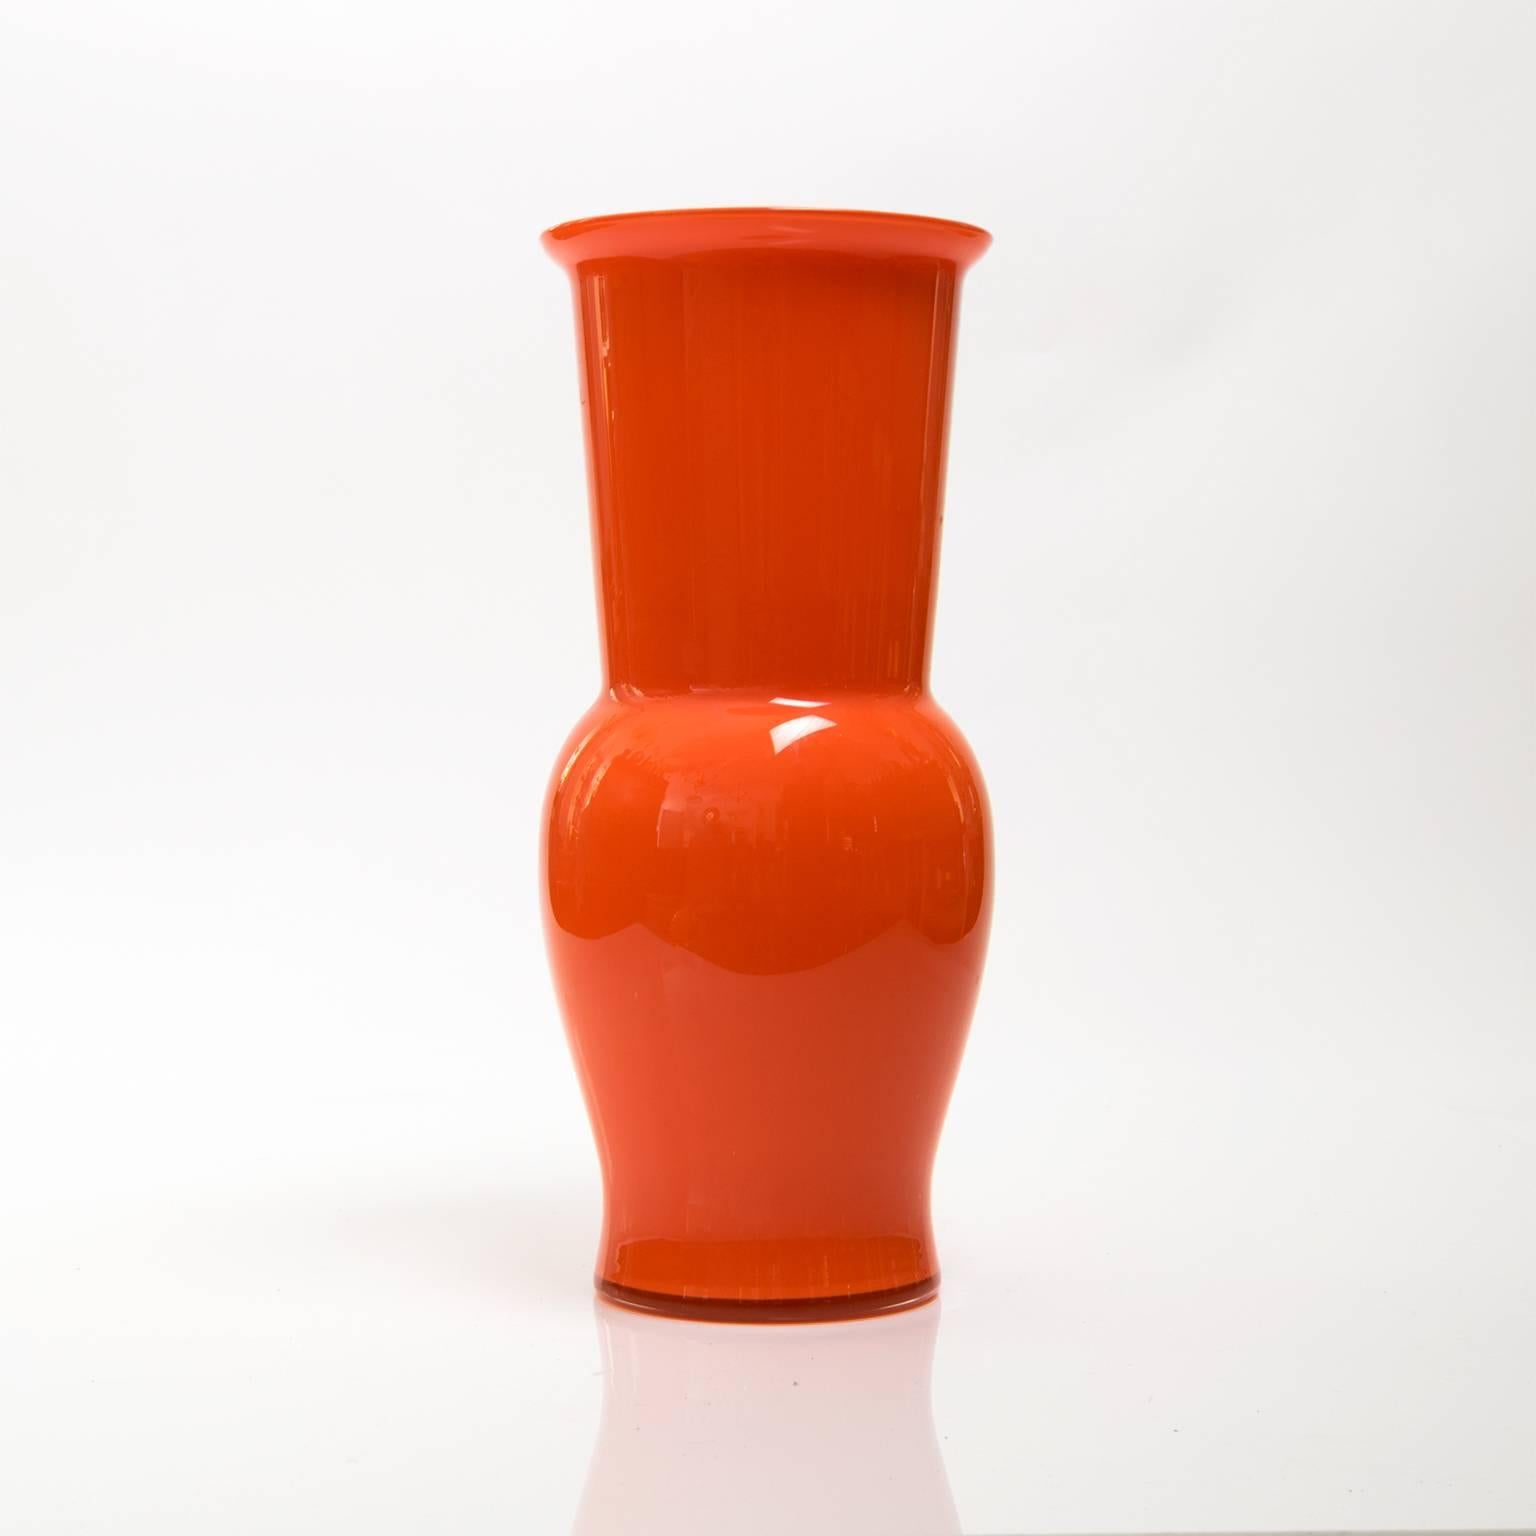 Scandinavian Modern Large red-orange cased glass vase from Denmark, circa 1960s.
 
Measures: Height 13.5", diameter 6".